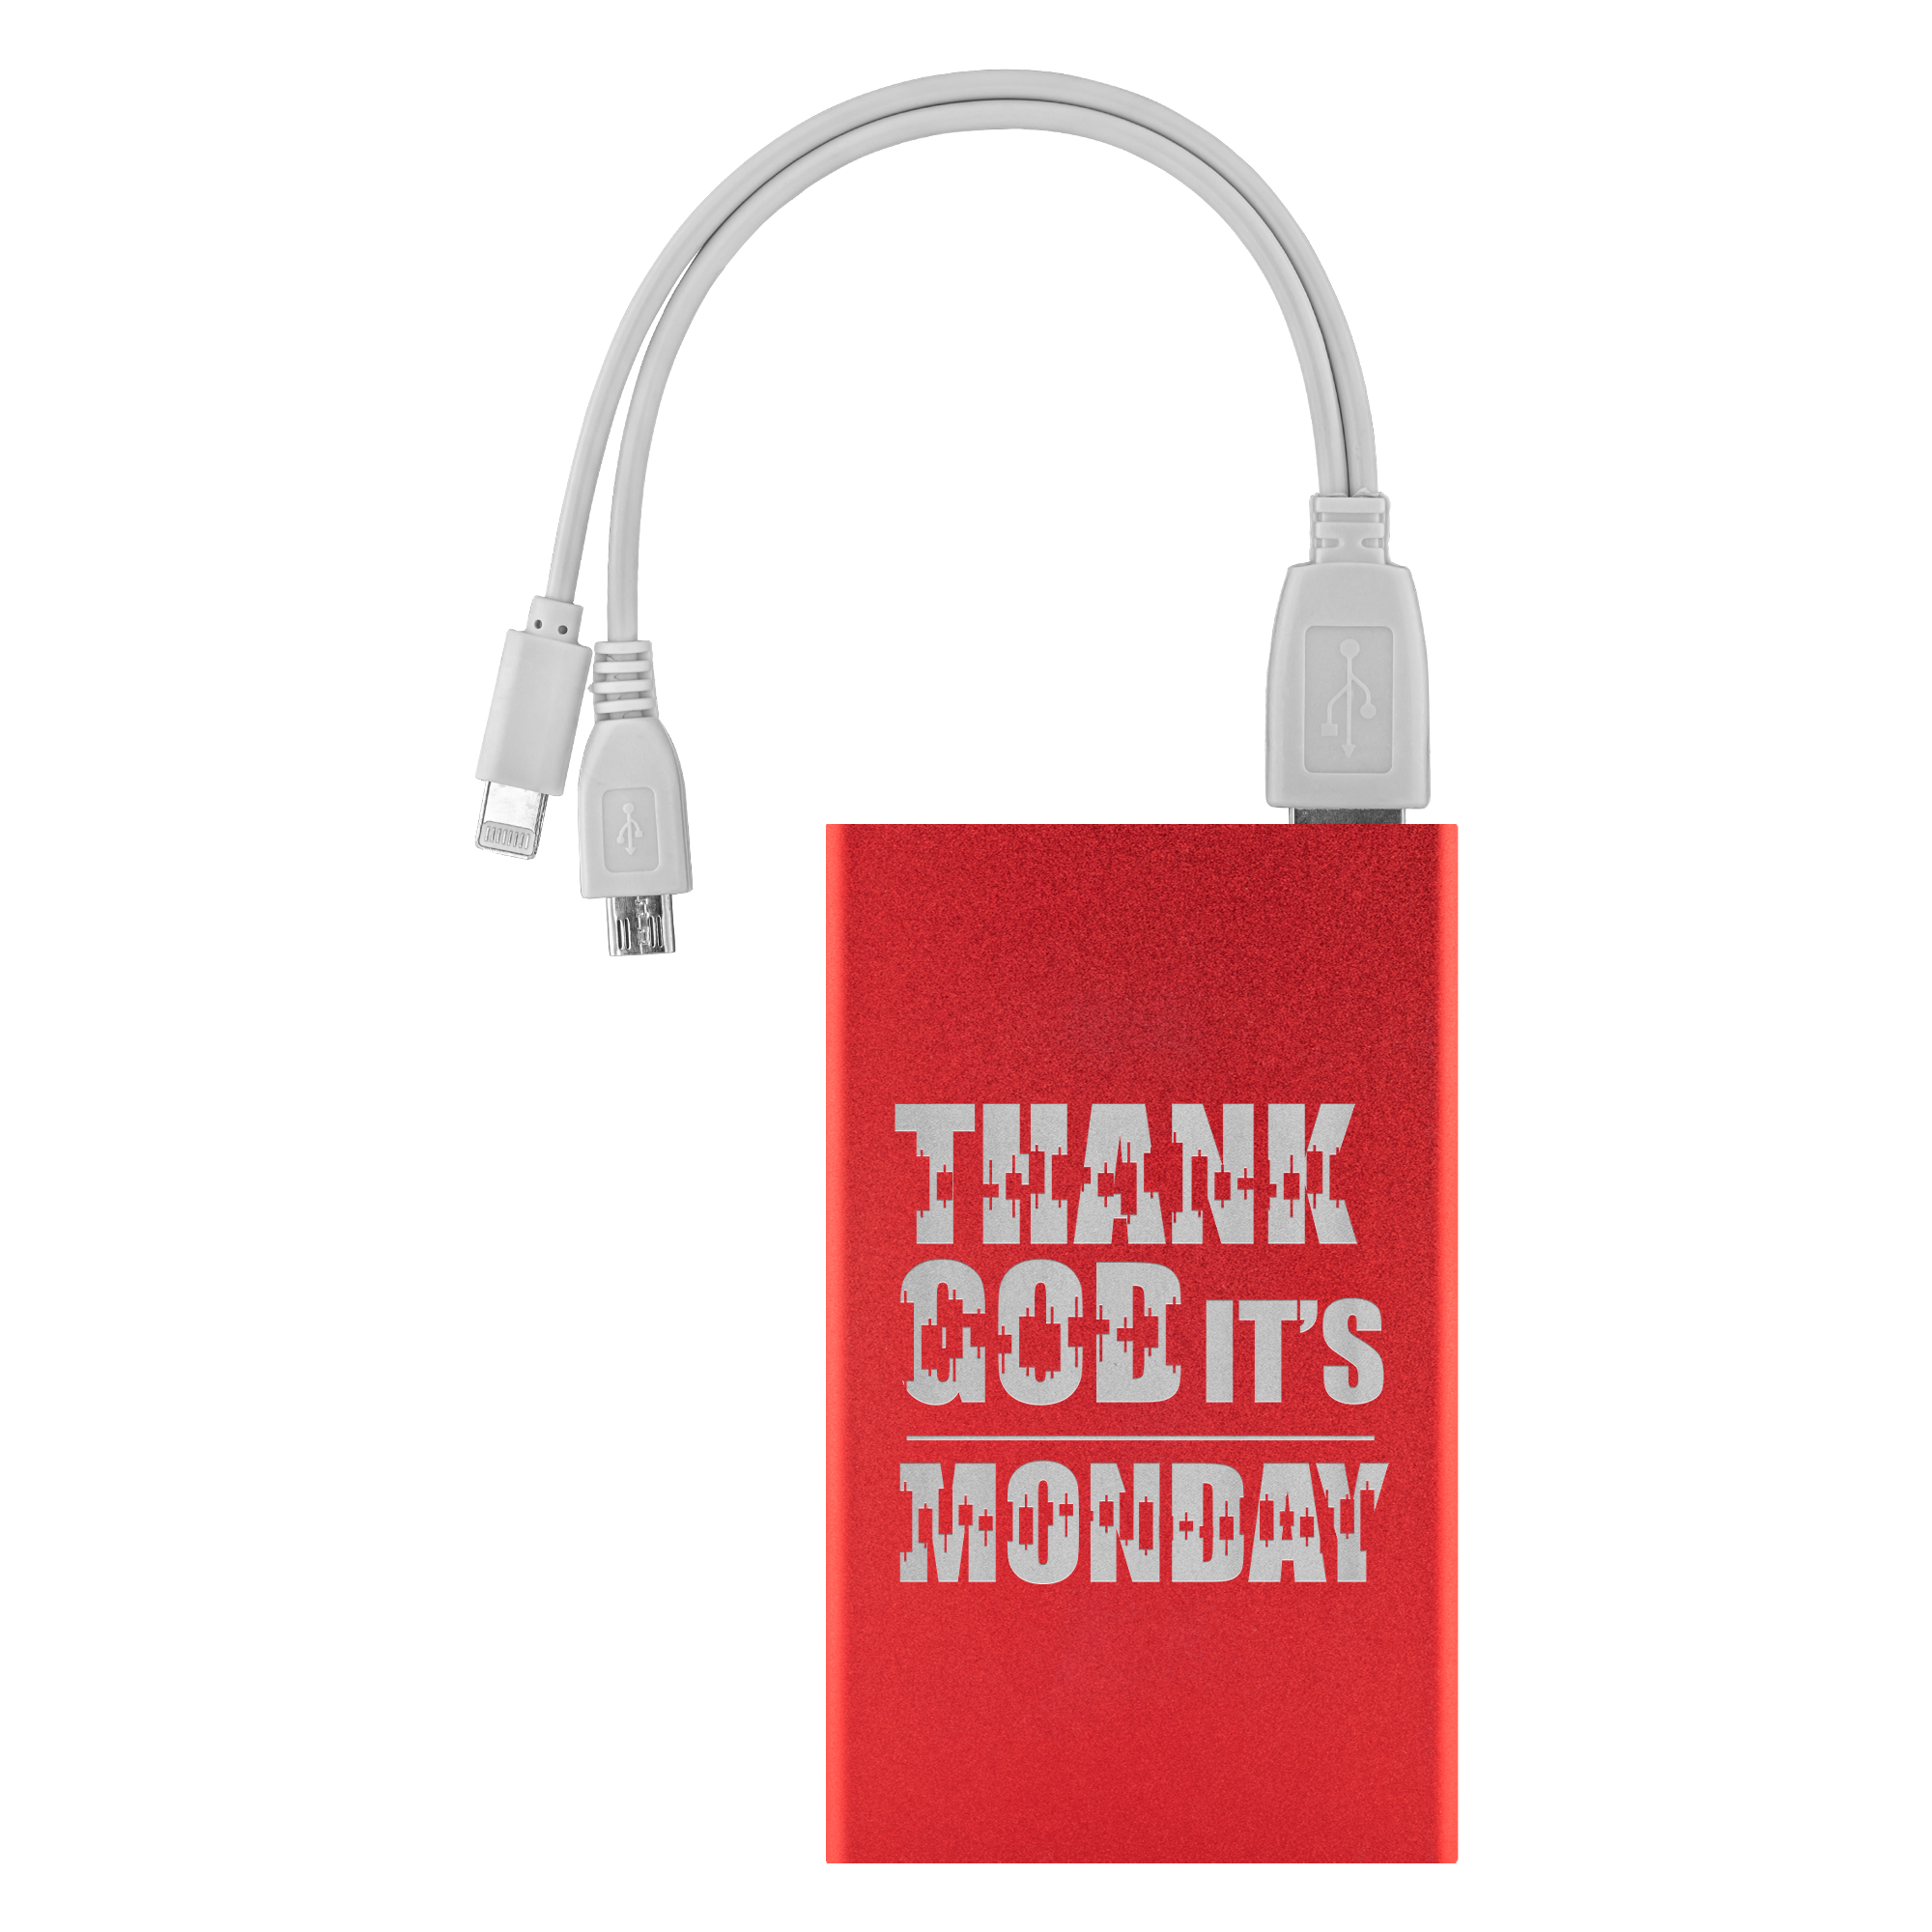 Power Banks - Gracias a Dios es lunes